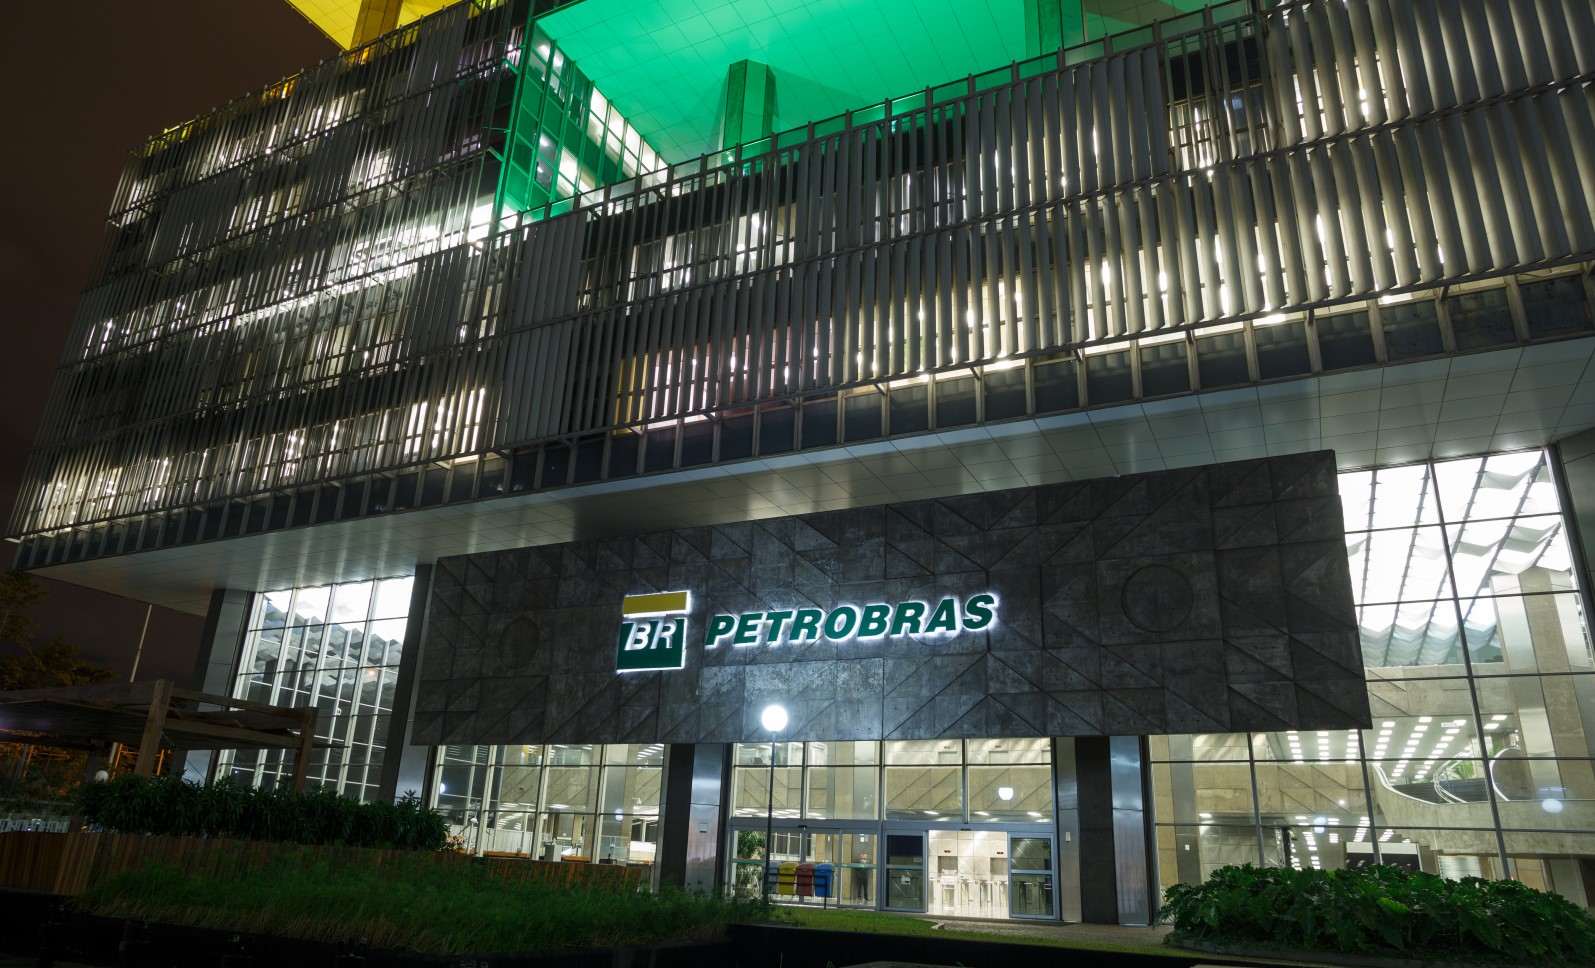 Petrobras' headquarters in Rio de Janeiro; Source: Petrobras